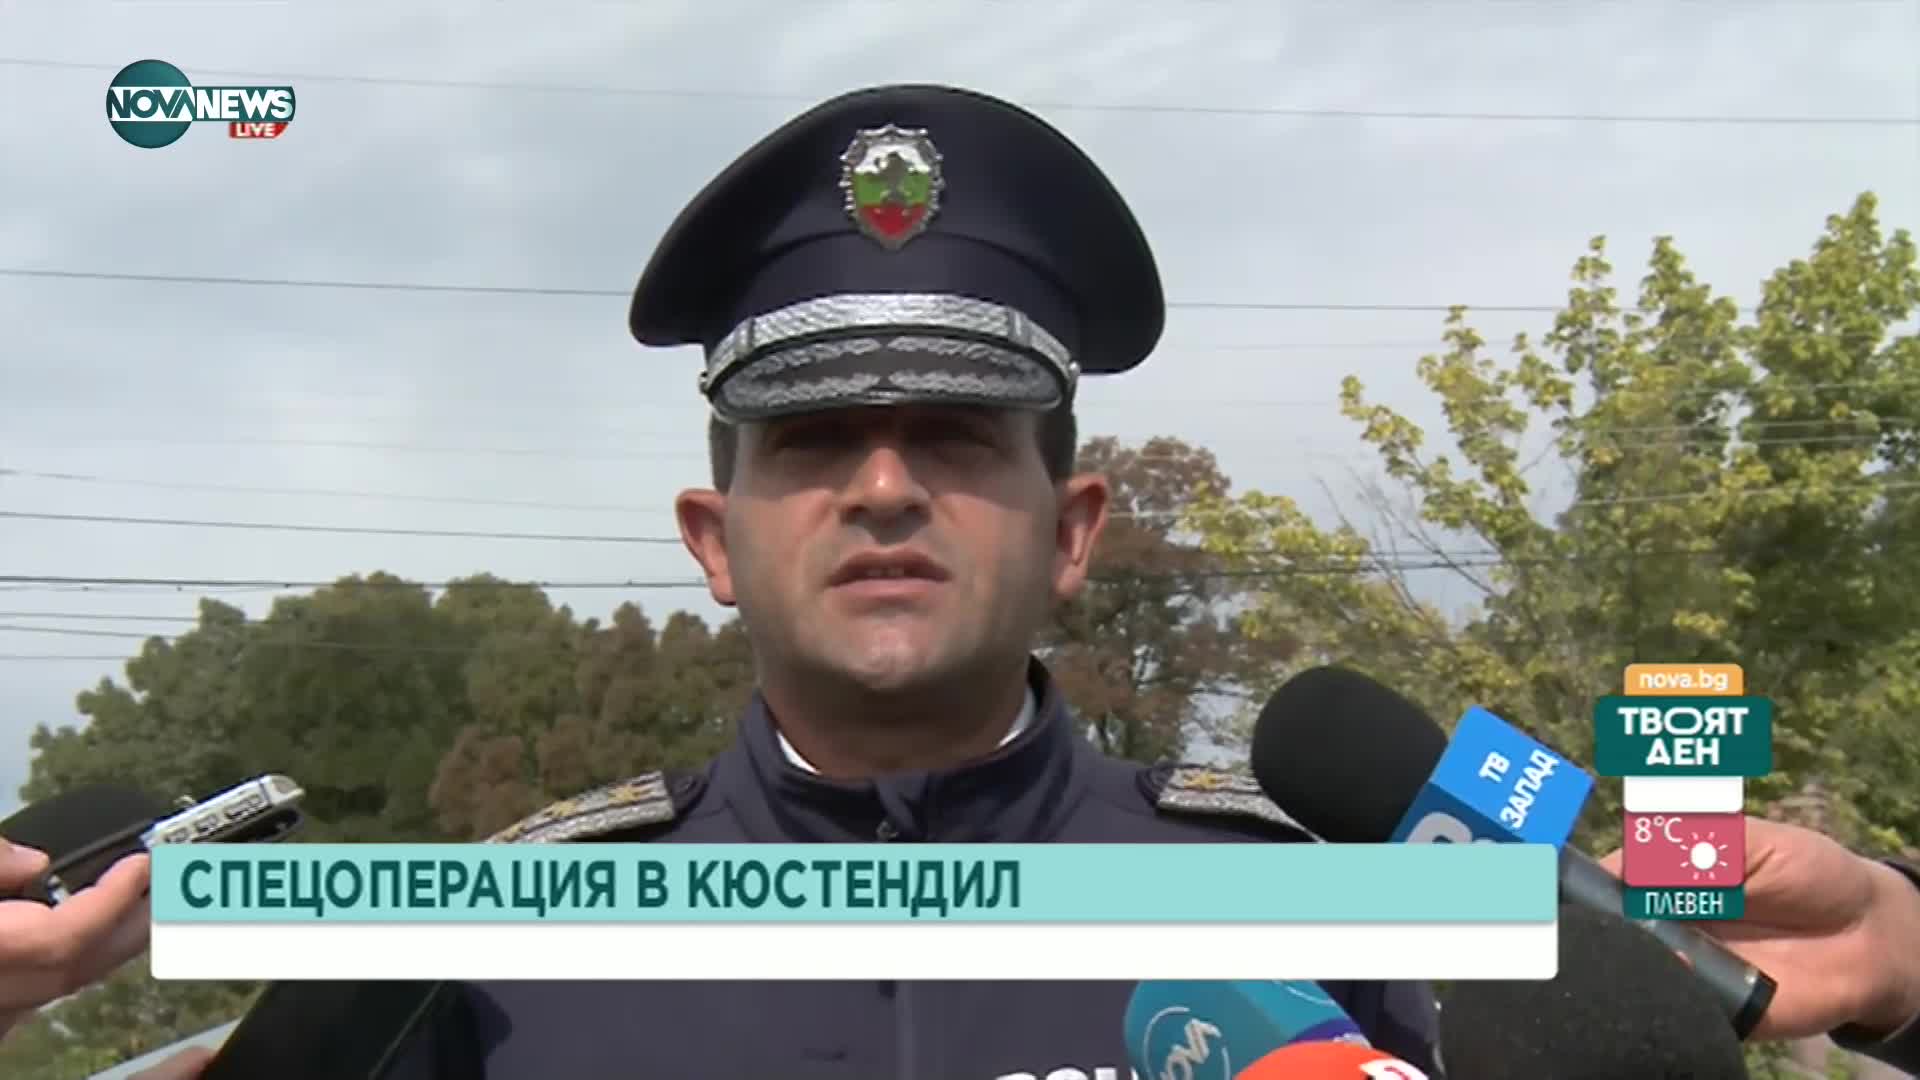 Полицейска акция в Кюстендил и Дупница, има задържан